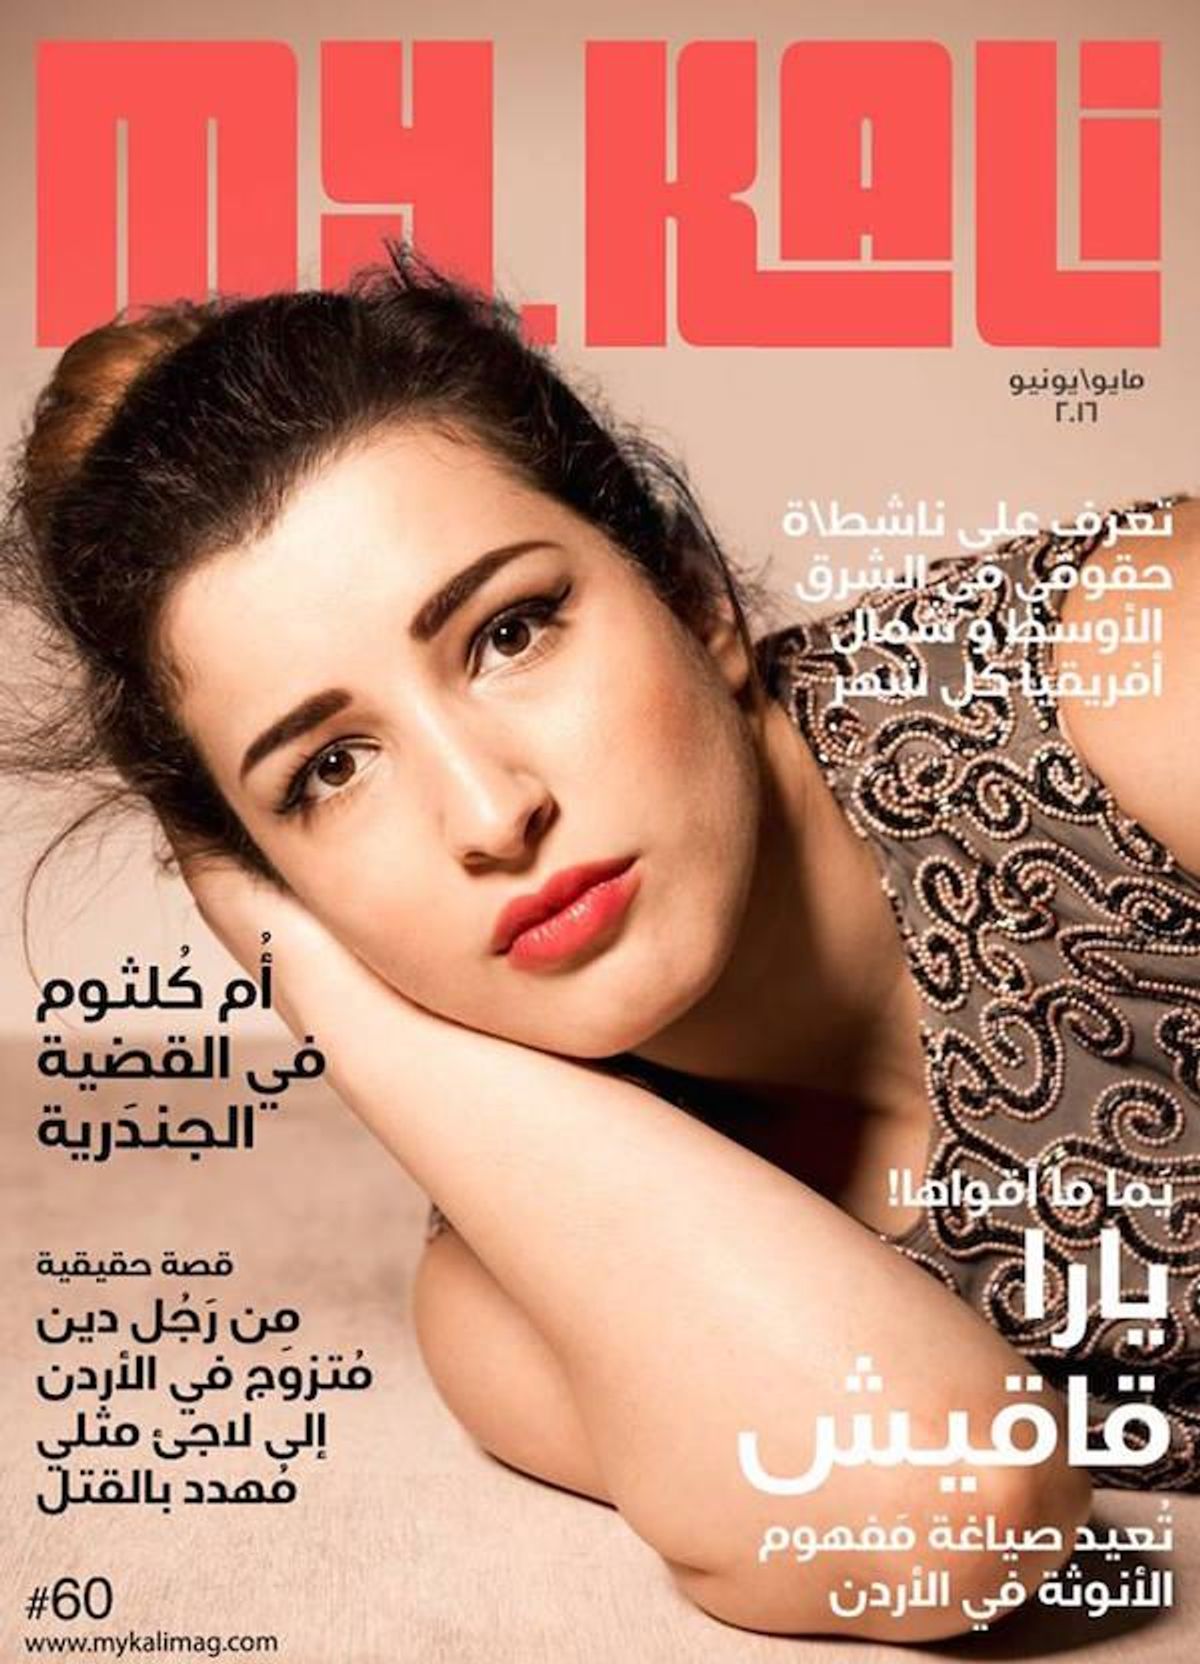 First Arabic LGBTQ Magazine Published in Jordan